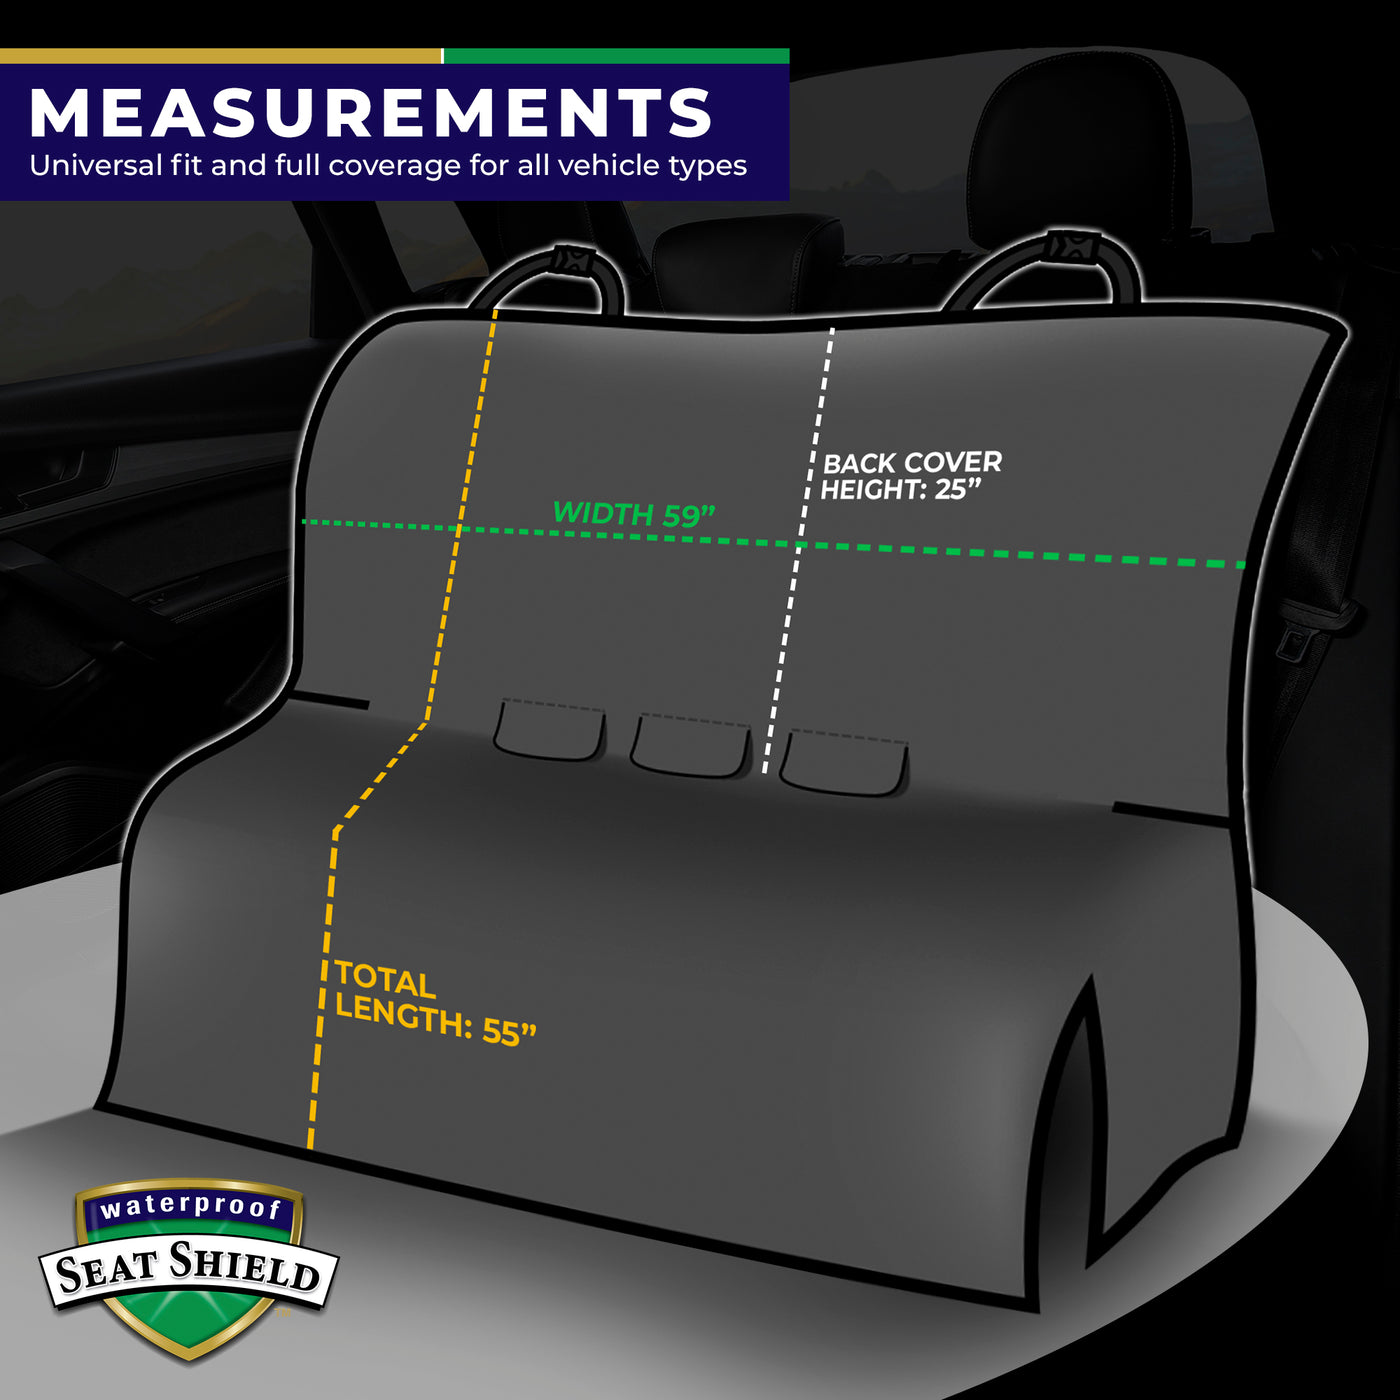 Seatshield - Waterproof Back Seat Cover Measurements